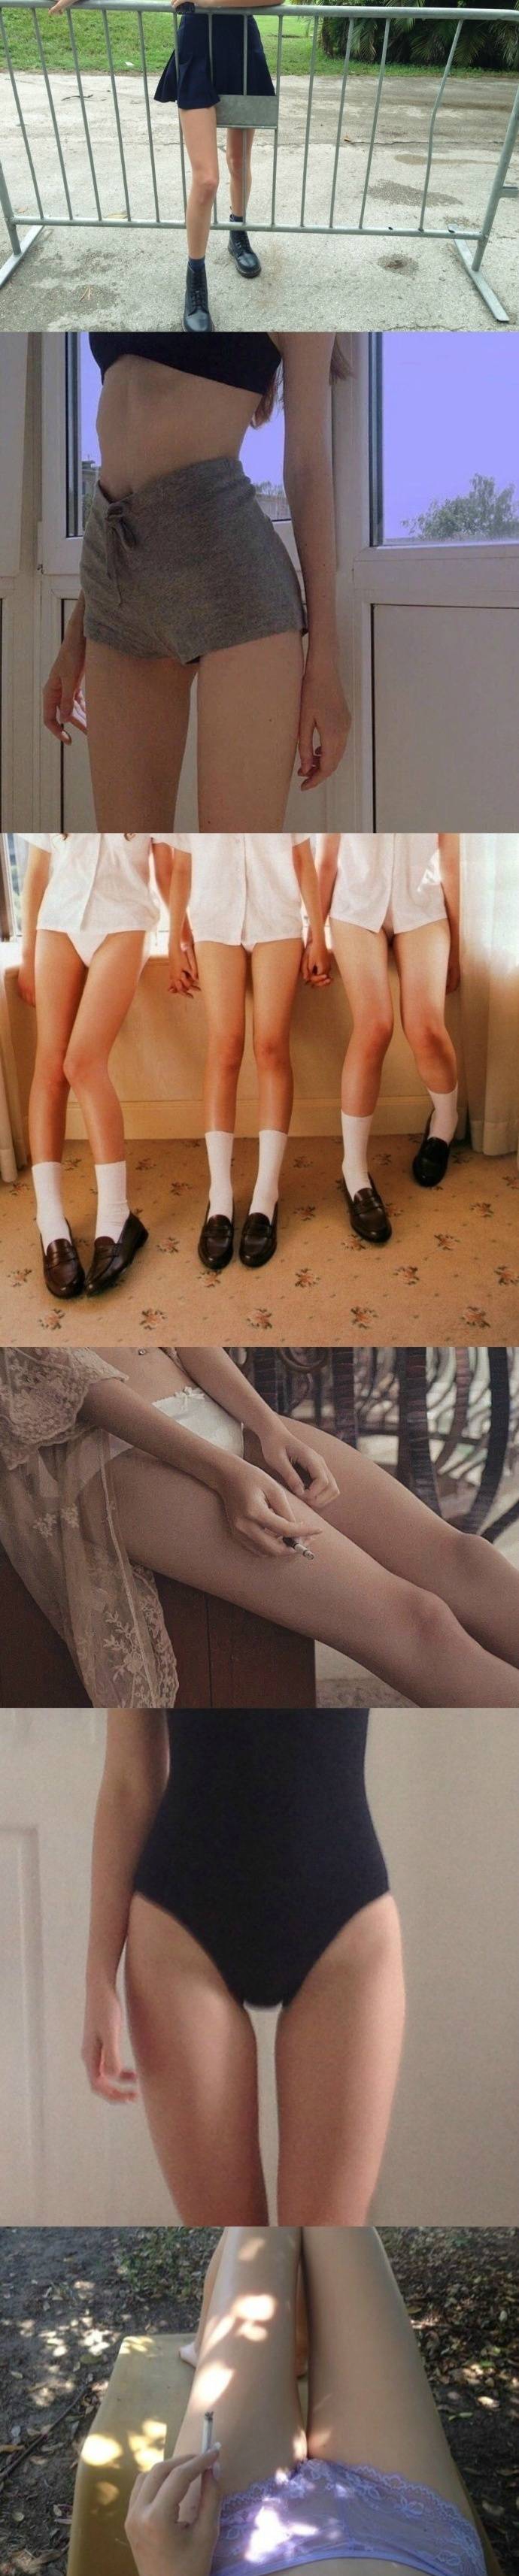 少女的腿：女孩啊 真的很让人着迷的生物~ ​ ​​​​